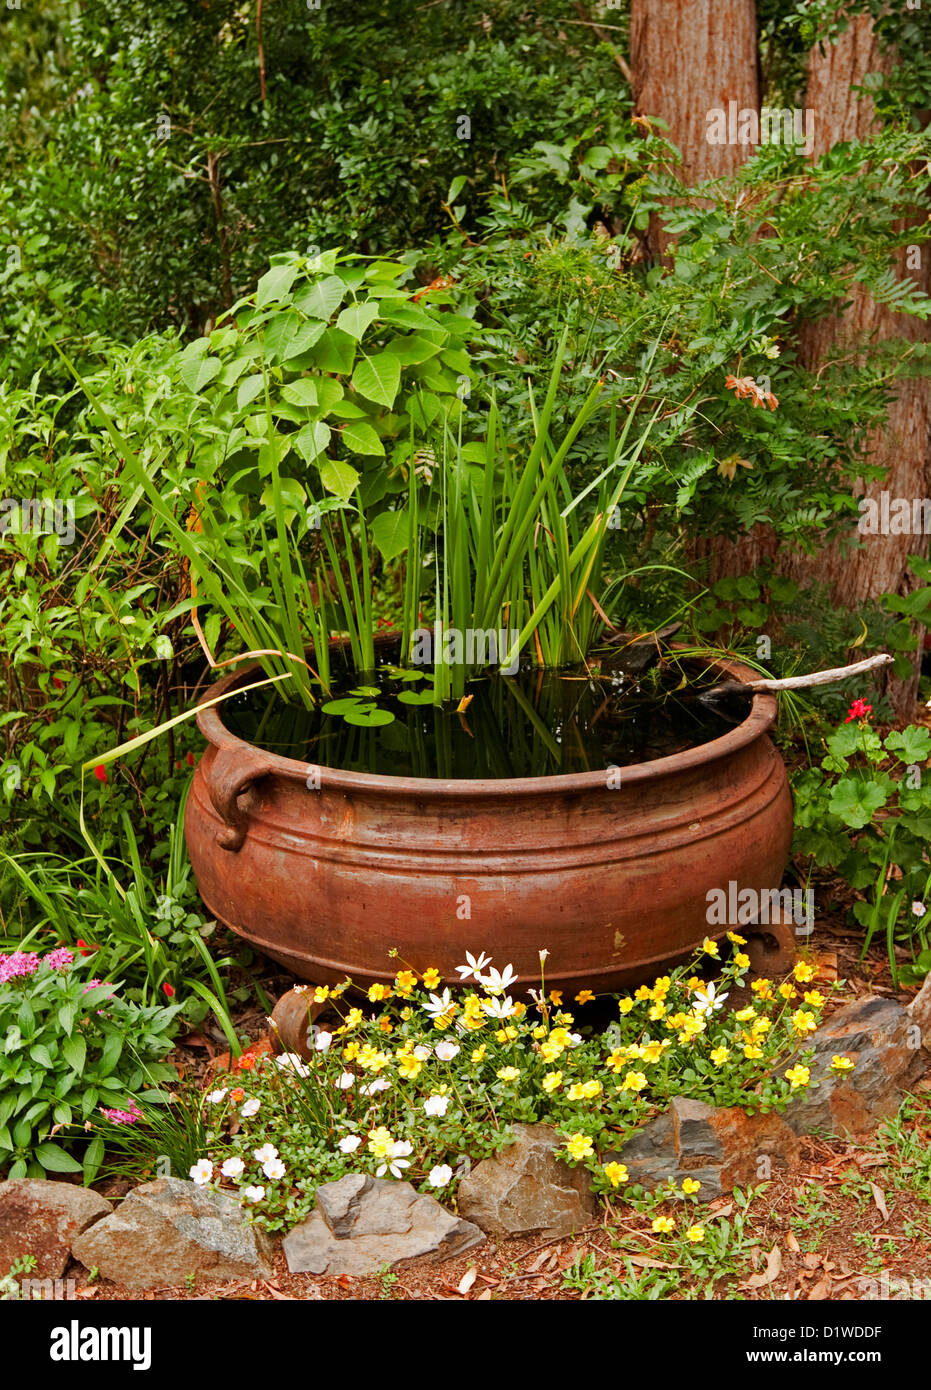 Grande calderone arrugginito - pesce stagno / giardino acqua caratteristica con piante acquatiche e circondato da fiori colorati e arbusti Foto Stock